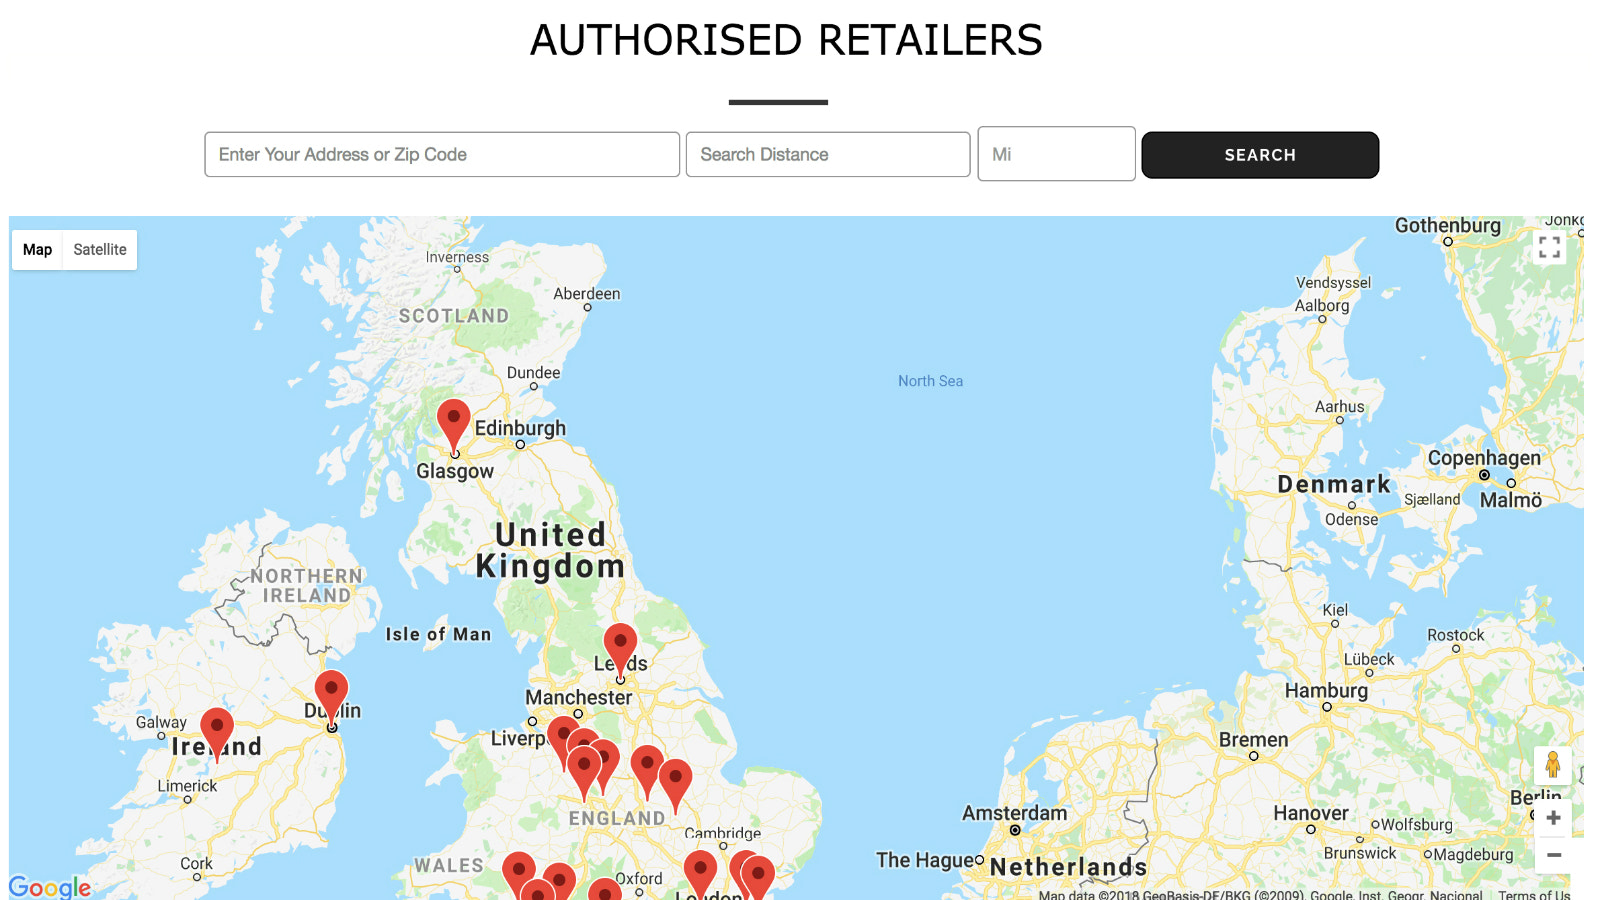 Butiker som visas på kartan